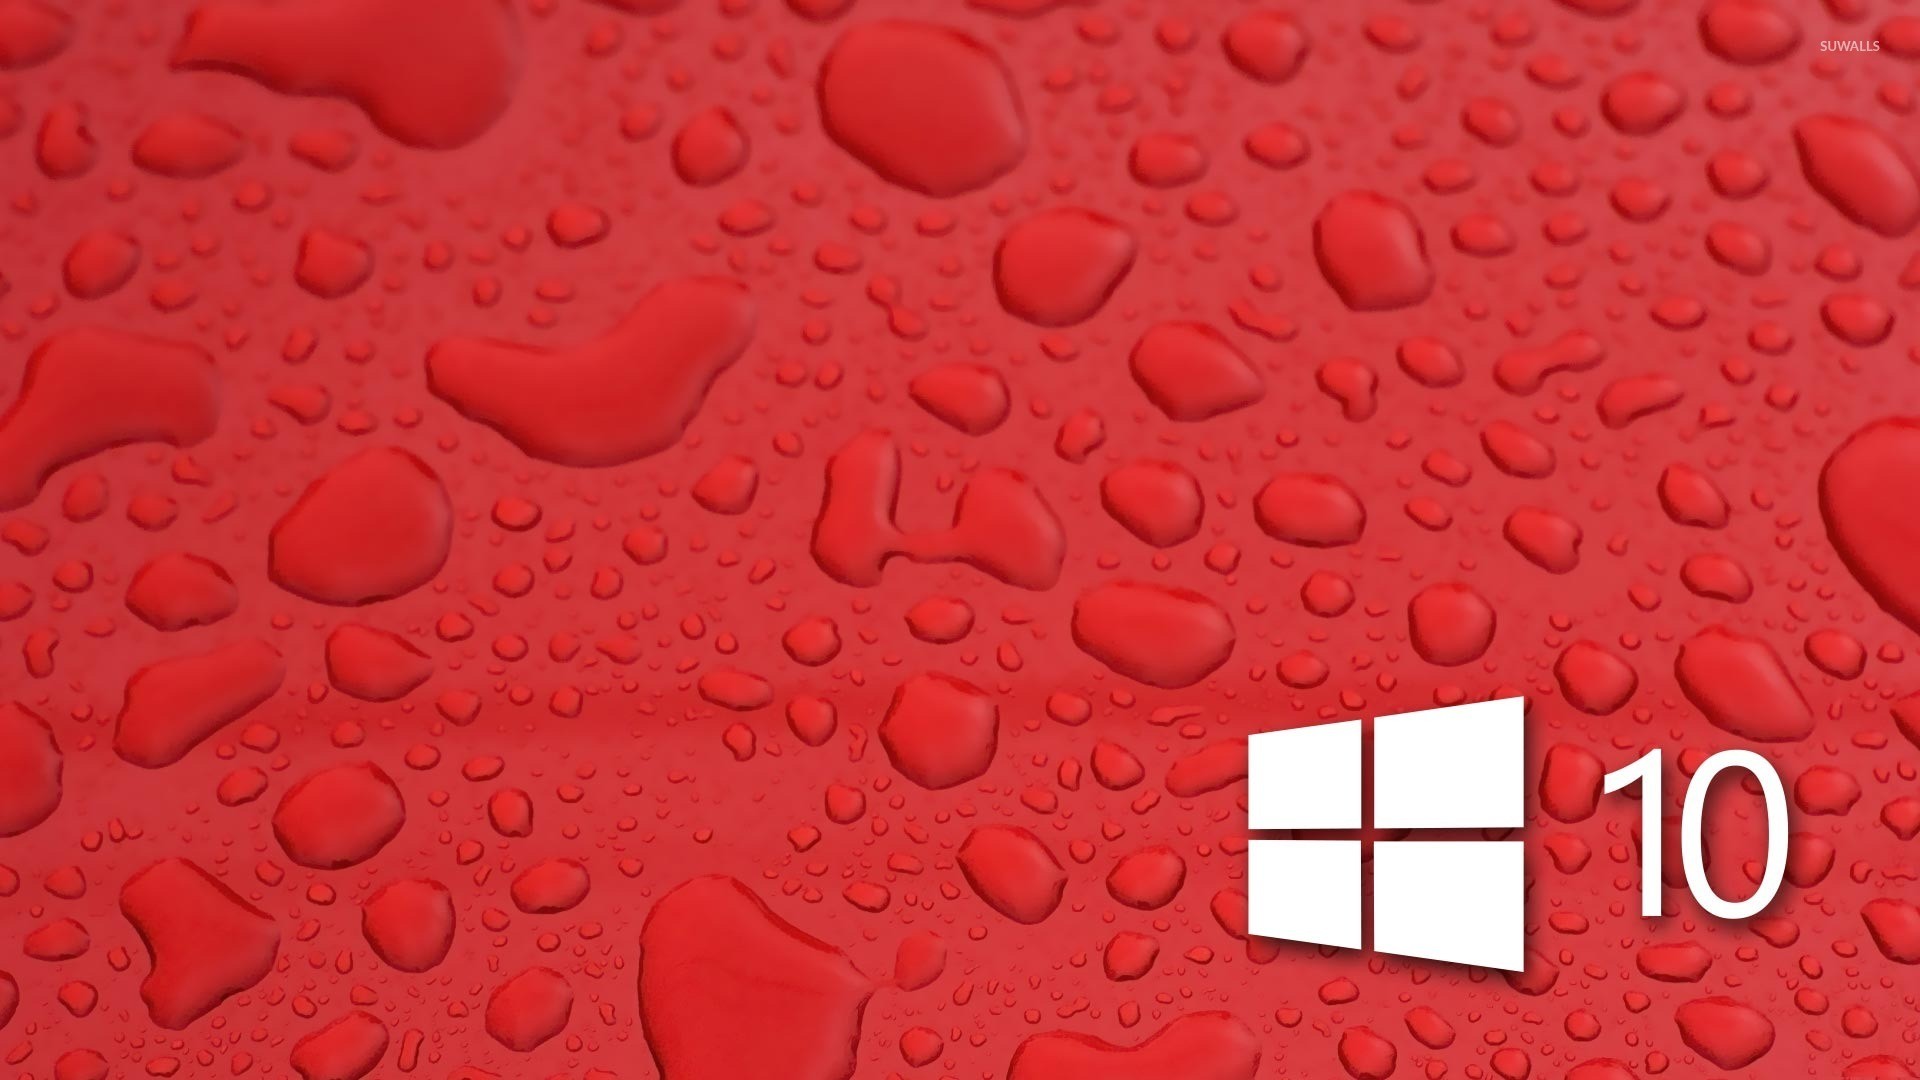 Обои на 10 4. Фон виндовс 10. Обои Windows красные. Красивые обои для Windows 10. Красивые обои на виндовс 10.